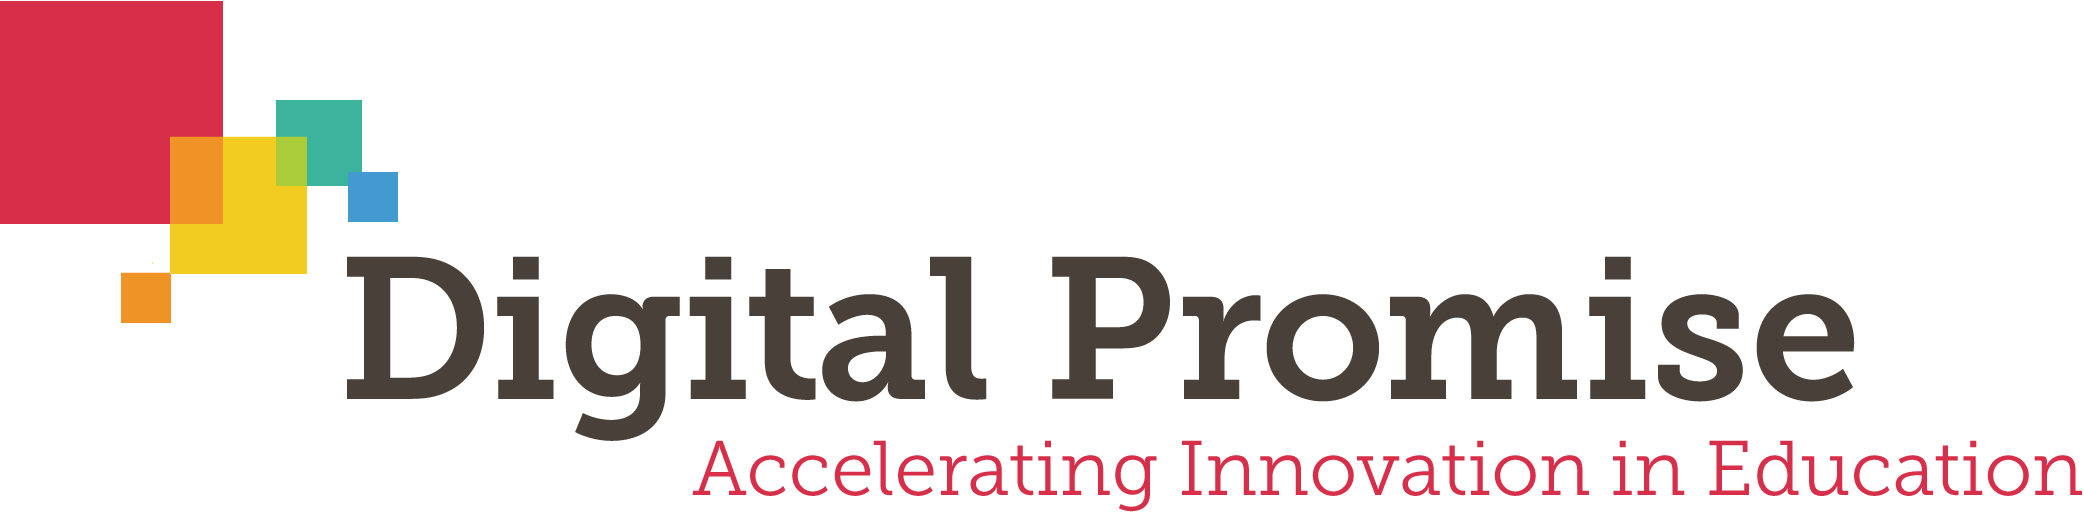 Digital-Promise-Logo.png